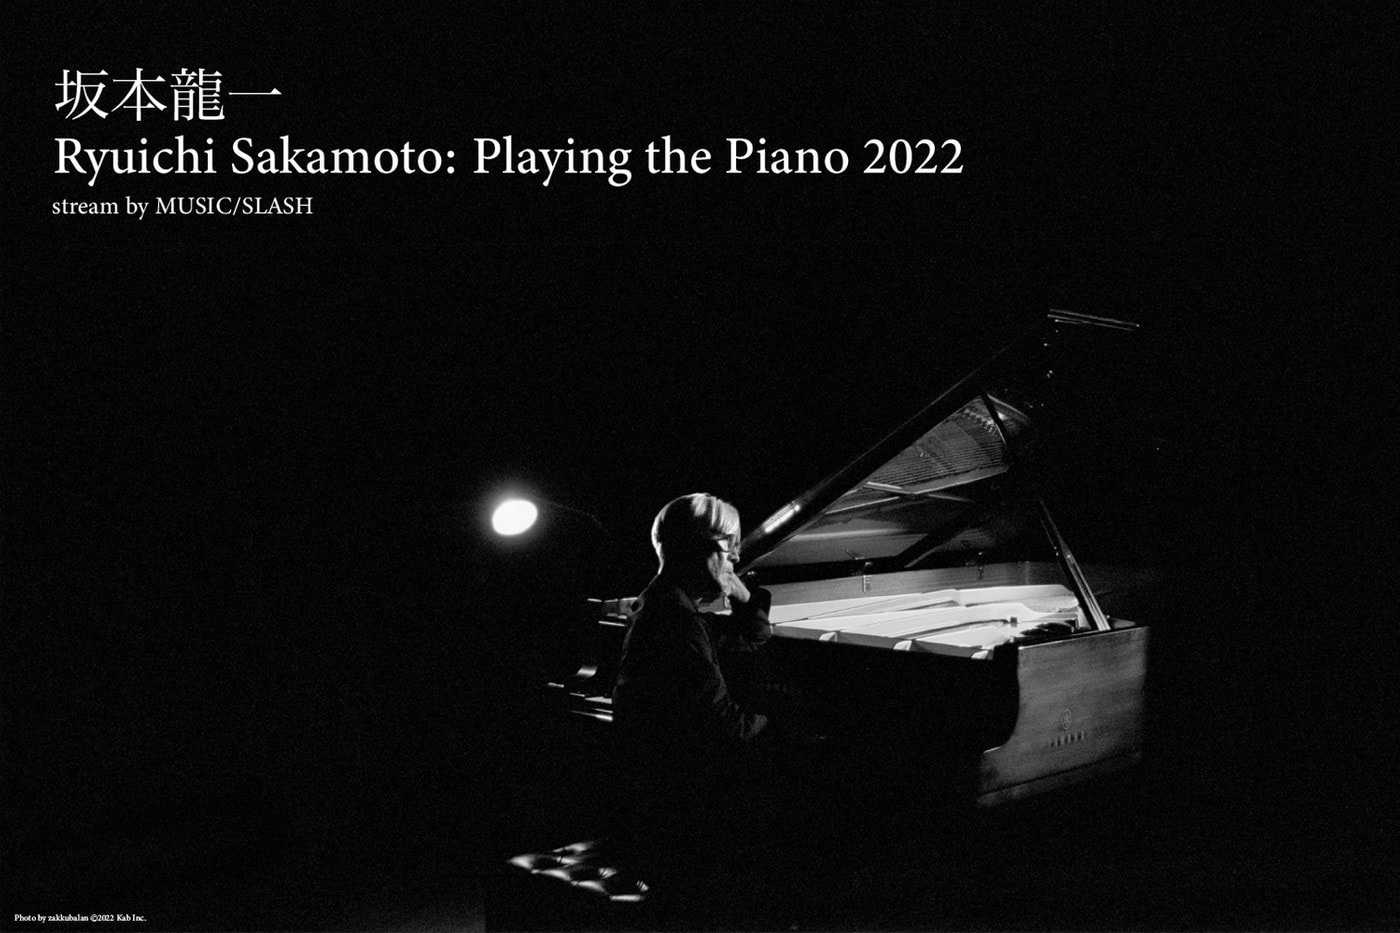 坂本龙一最新线上钢琴独奏会日期正式公开